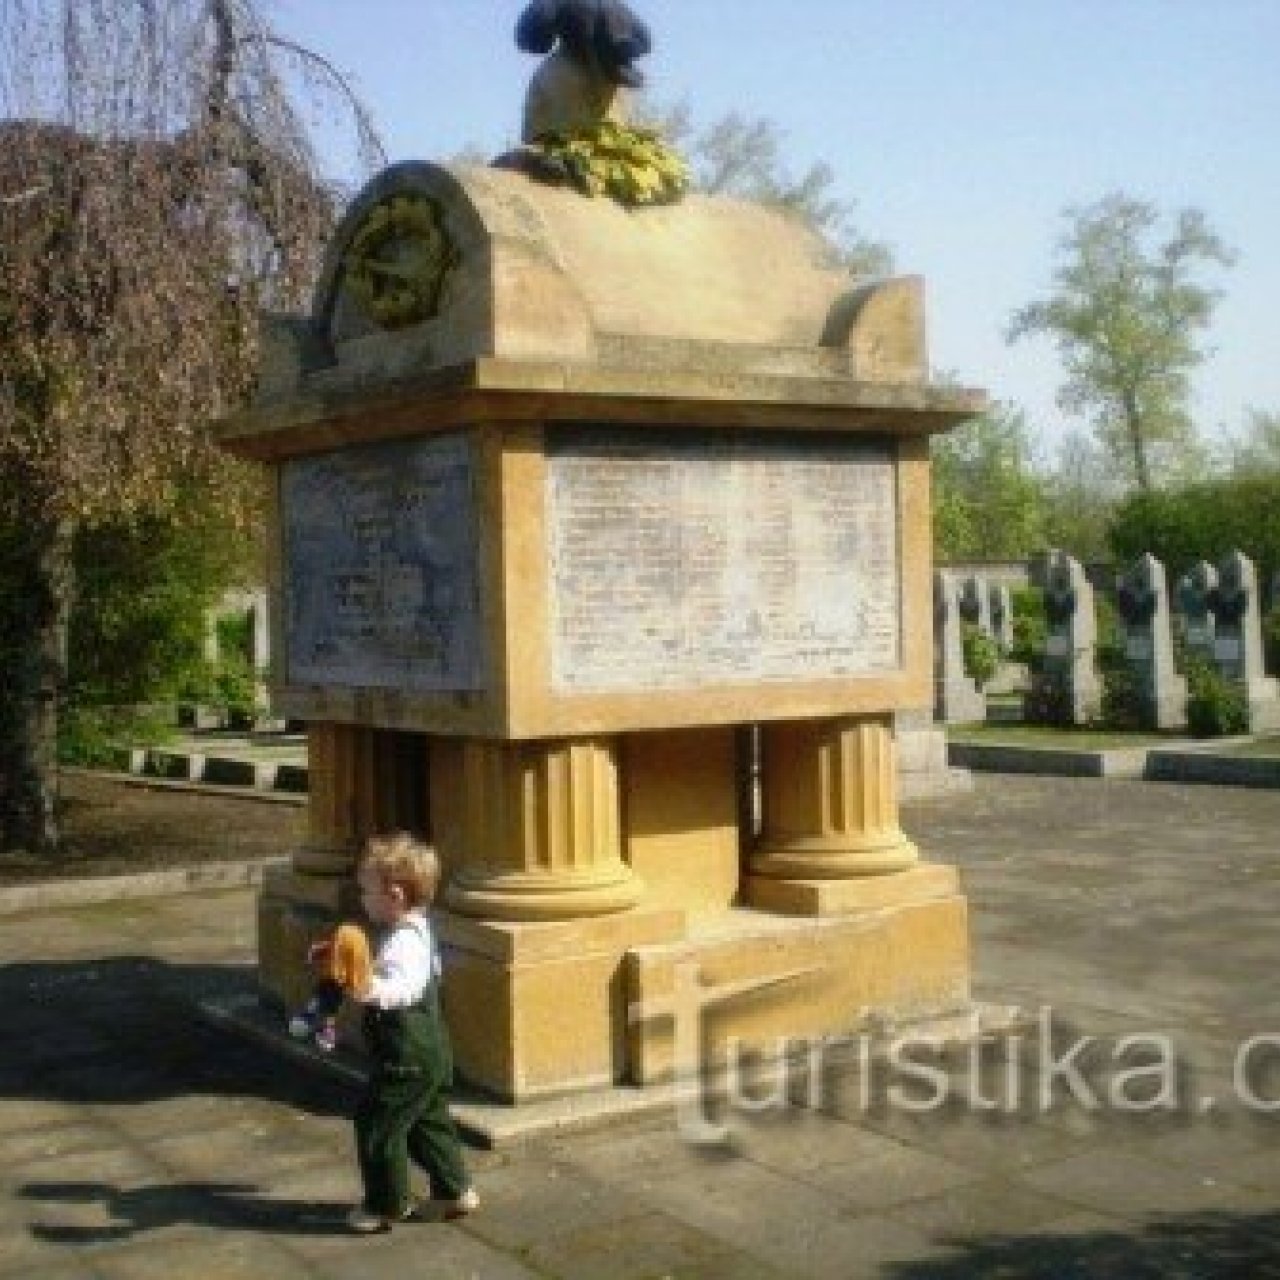 Olšanské hřbitovy - židovský hřbitov a vojenské hřbitovy